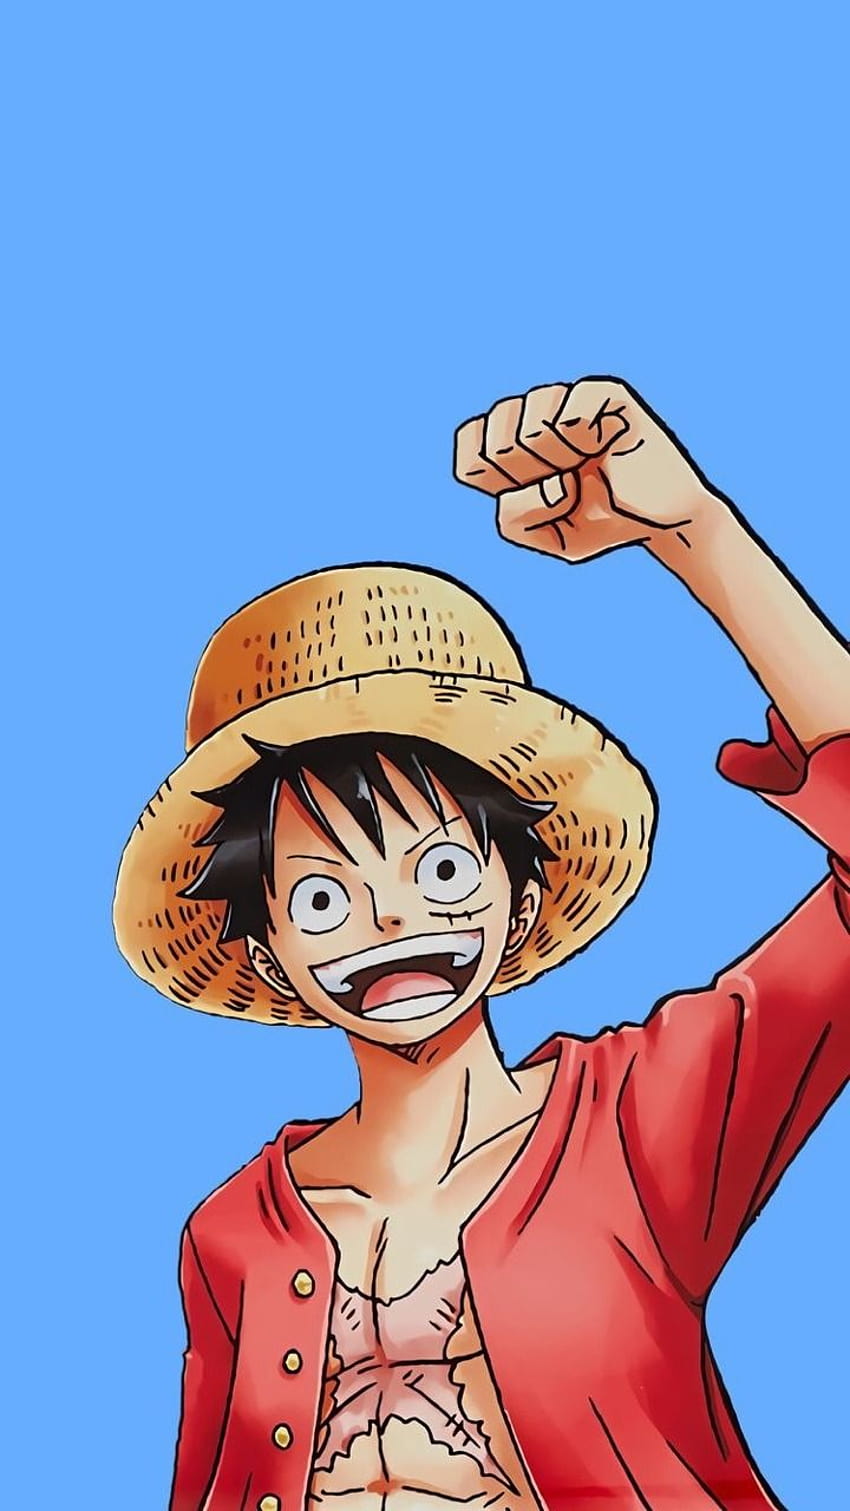 Đây là bức hình nền One Piece mà mọi fan hâm mộ đều phải có trên điện thoại của mình. Từ khuôn mặt hiền lành đến bộ giáp quyền lực của Luffy, bức hình nền này chắc chắn sẽ làm bạn mê mẩn với thế giới của One Piece.